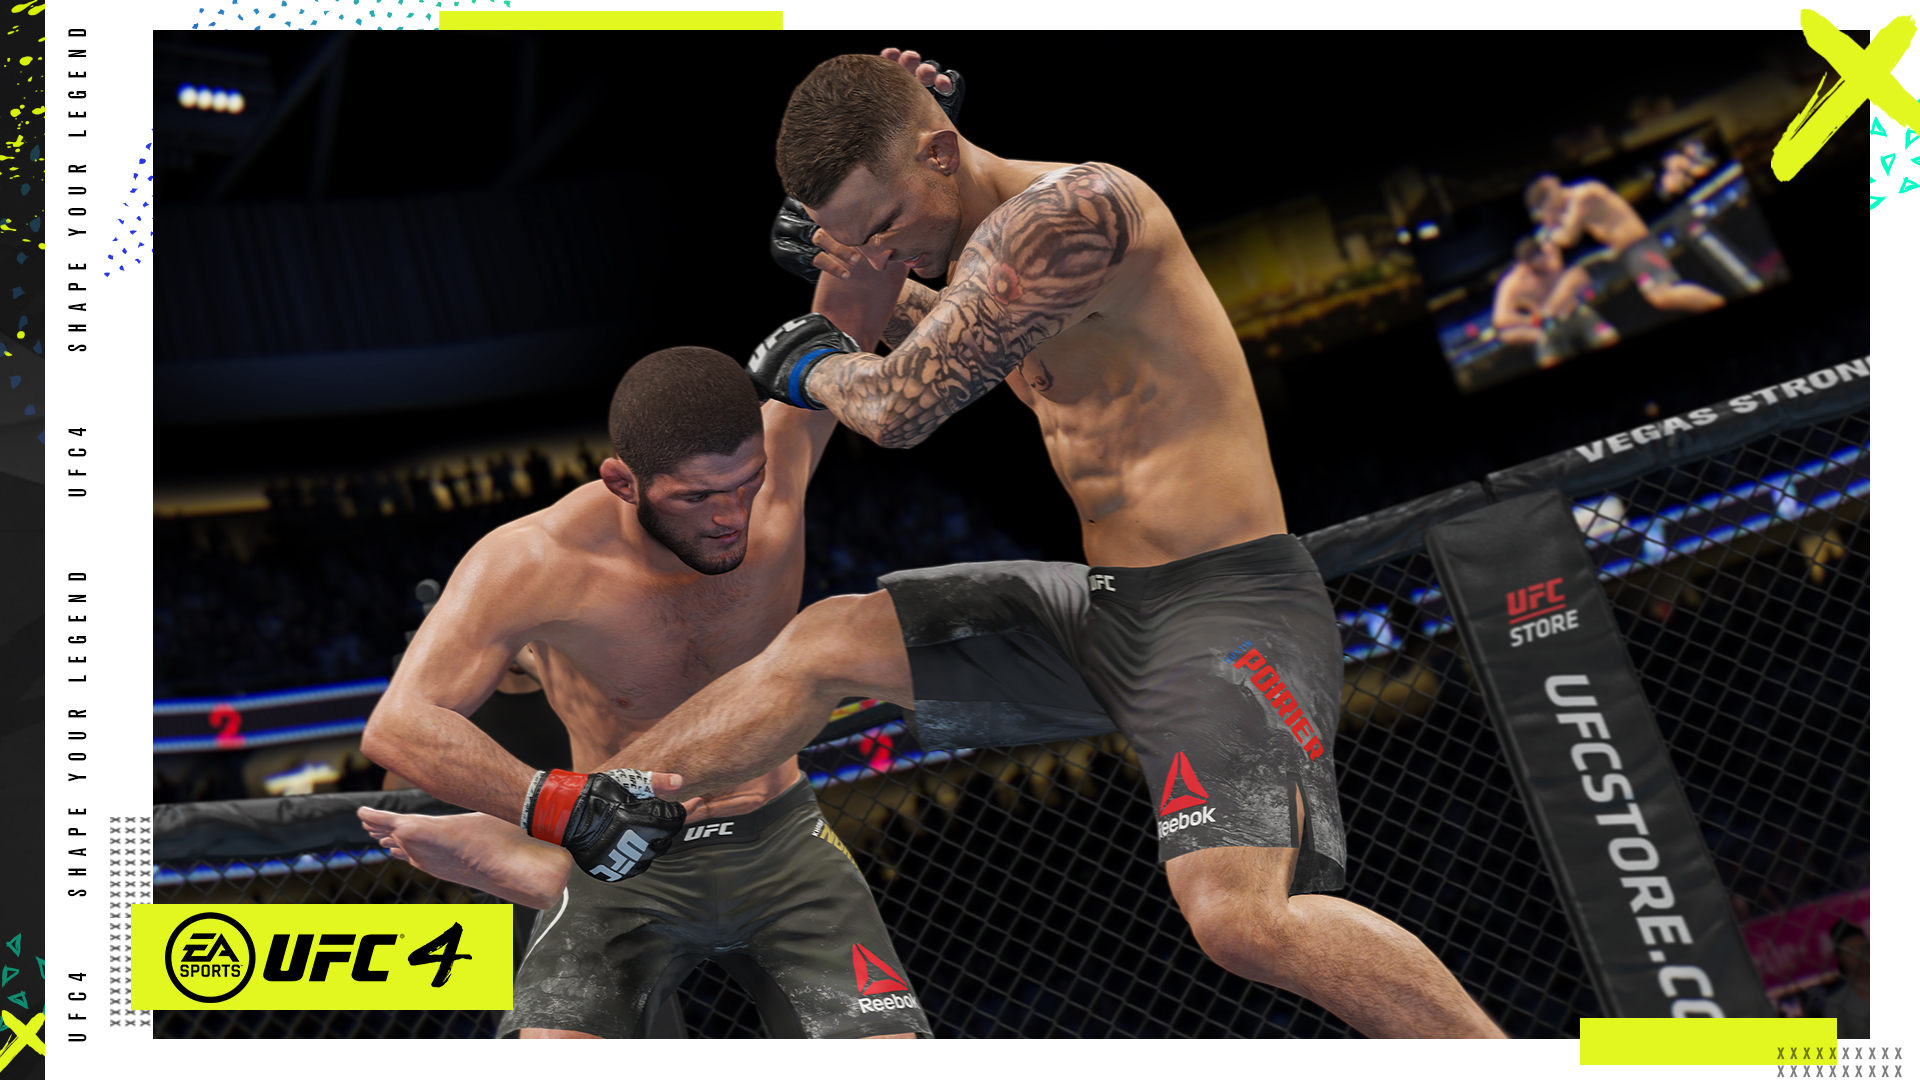 Novo UFC 4 apresenta recursos "gamers" para agradar além dos fãs de MMA